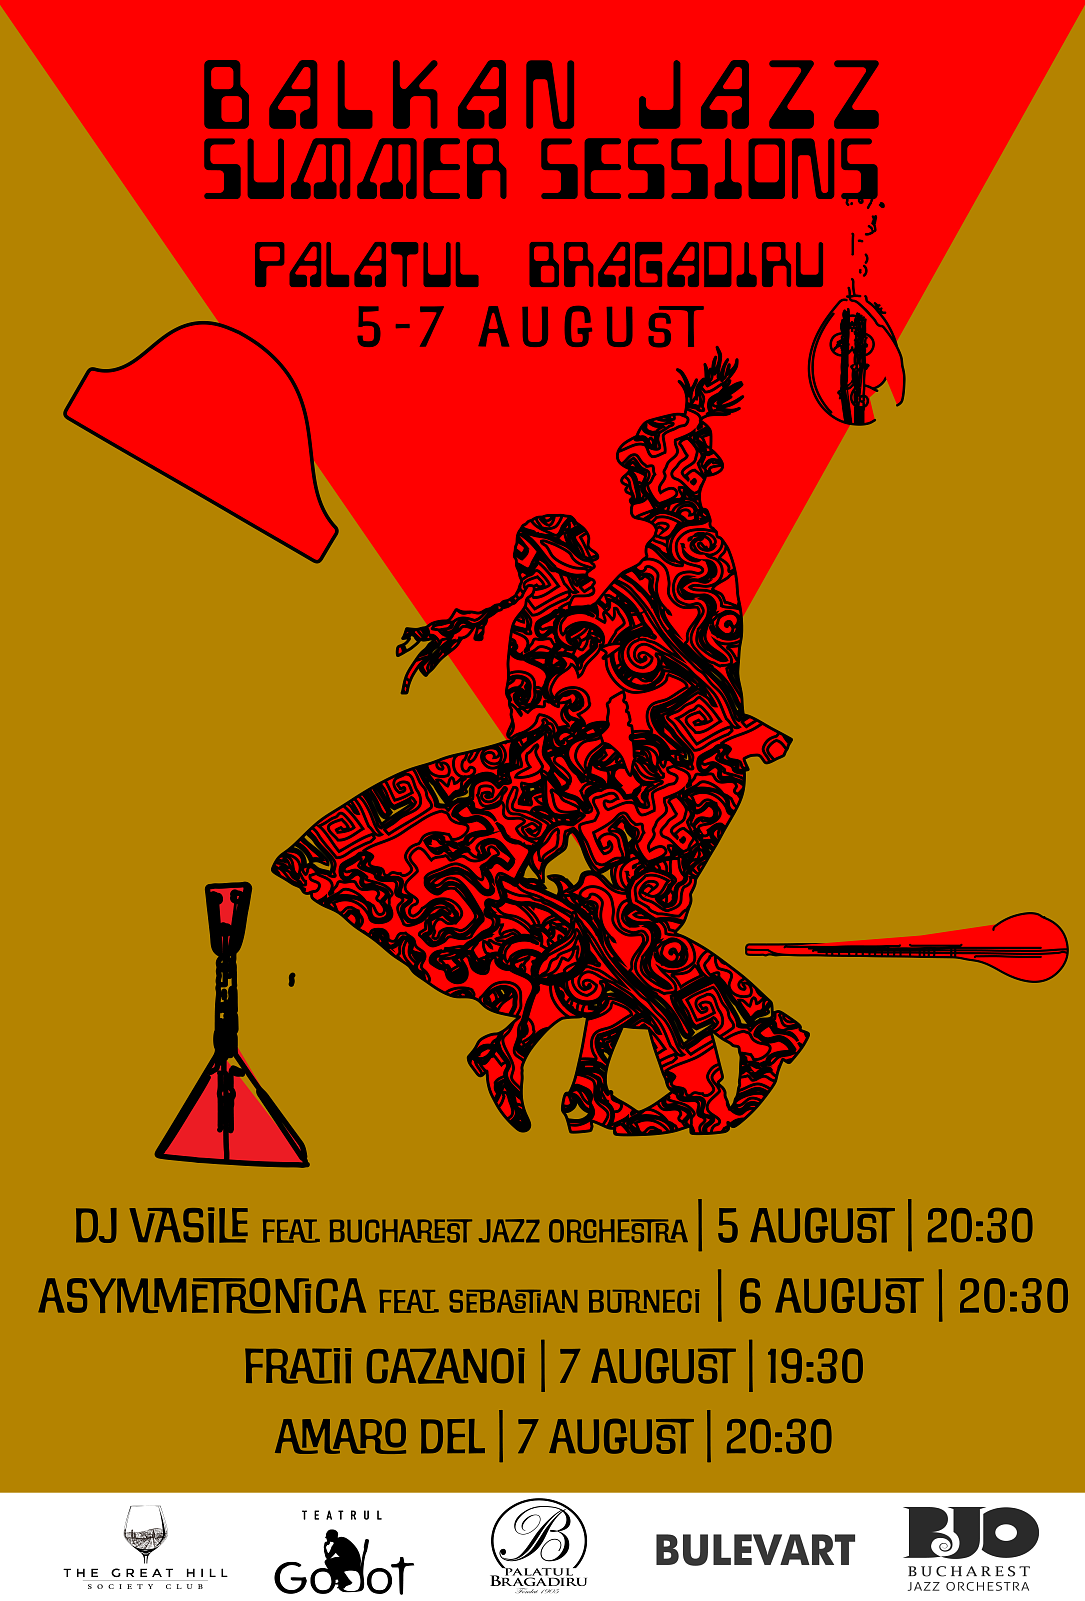 România, Bulgaria și Serbia se întâlnesc pentru un weekend de muzică eclectică la Balkan Jazz Summer Sessions